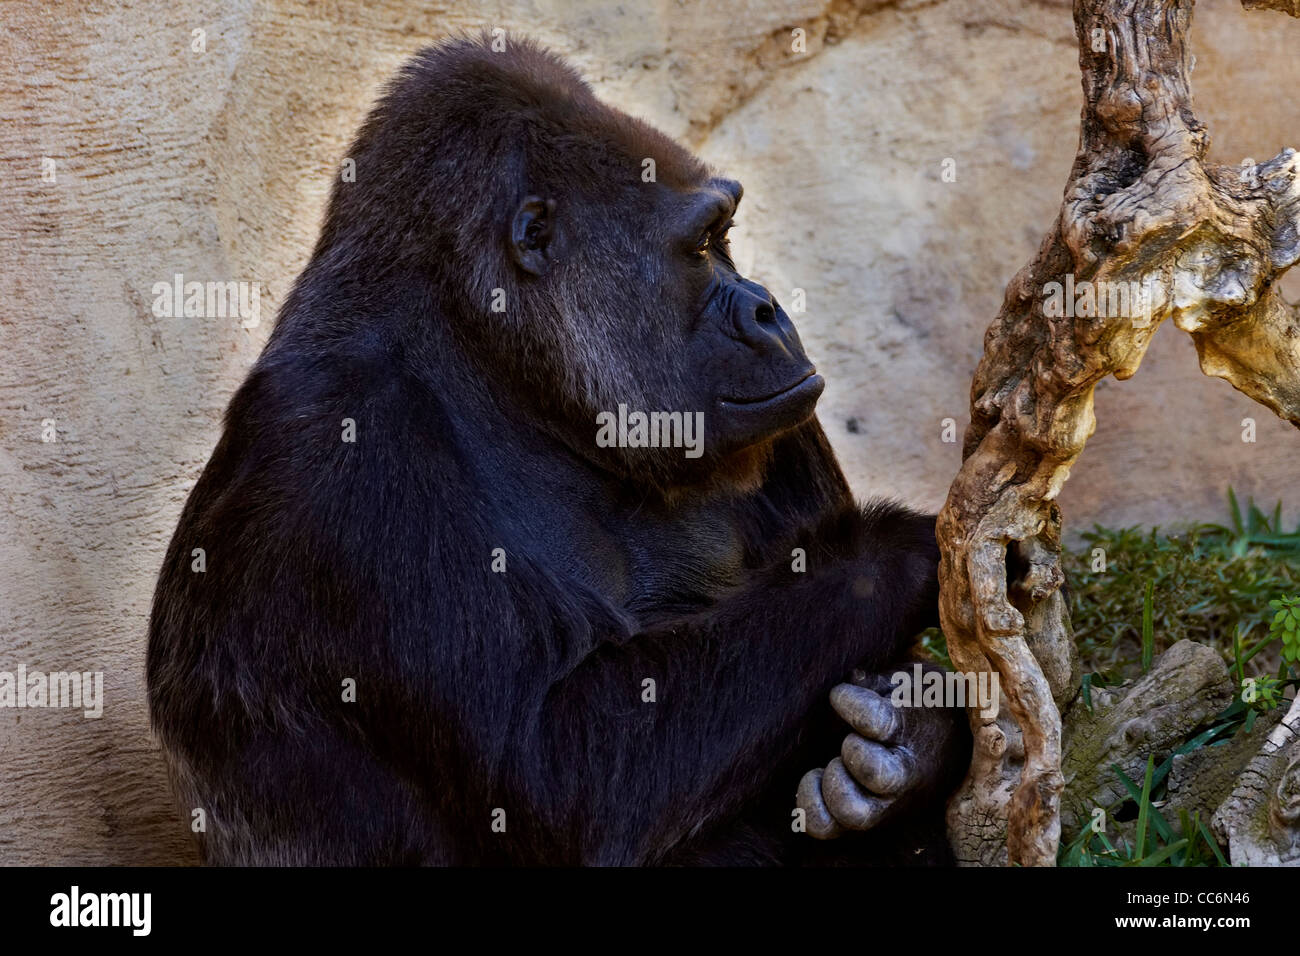 Gorilla, Menschenaffen, in Gefangenschaft Stockfoto